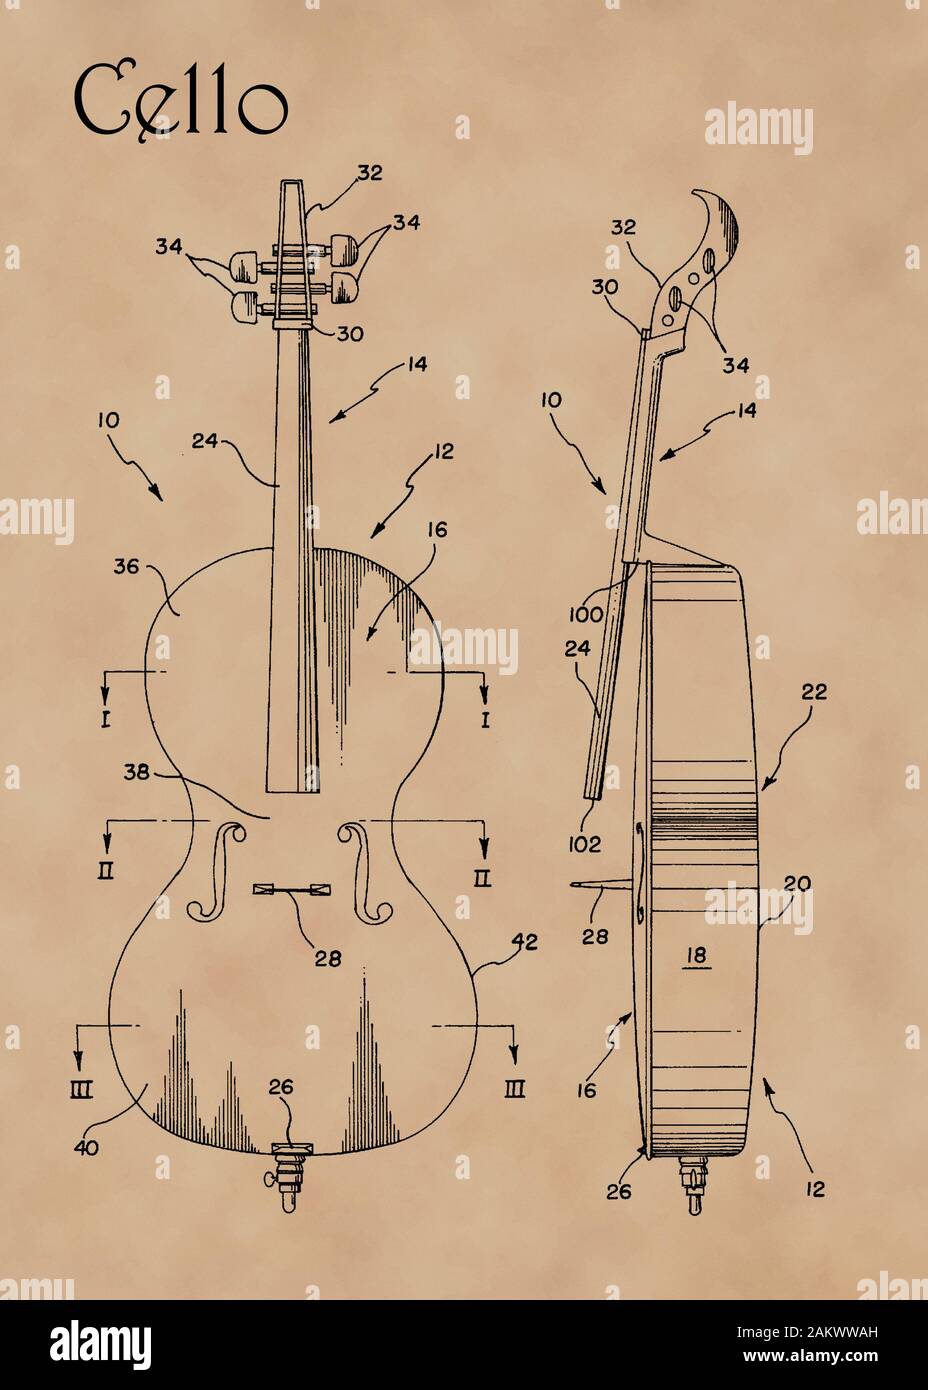 Us-Patent Diagramm für Cello Instrument auf verblasste Pergamentpapier. Stockfoto